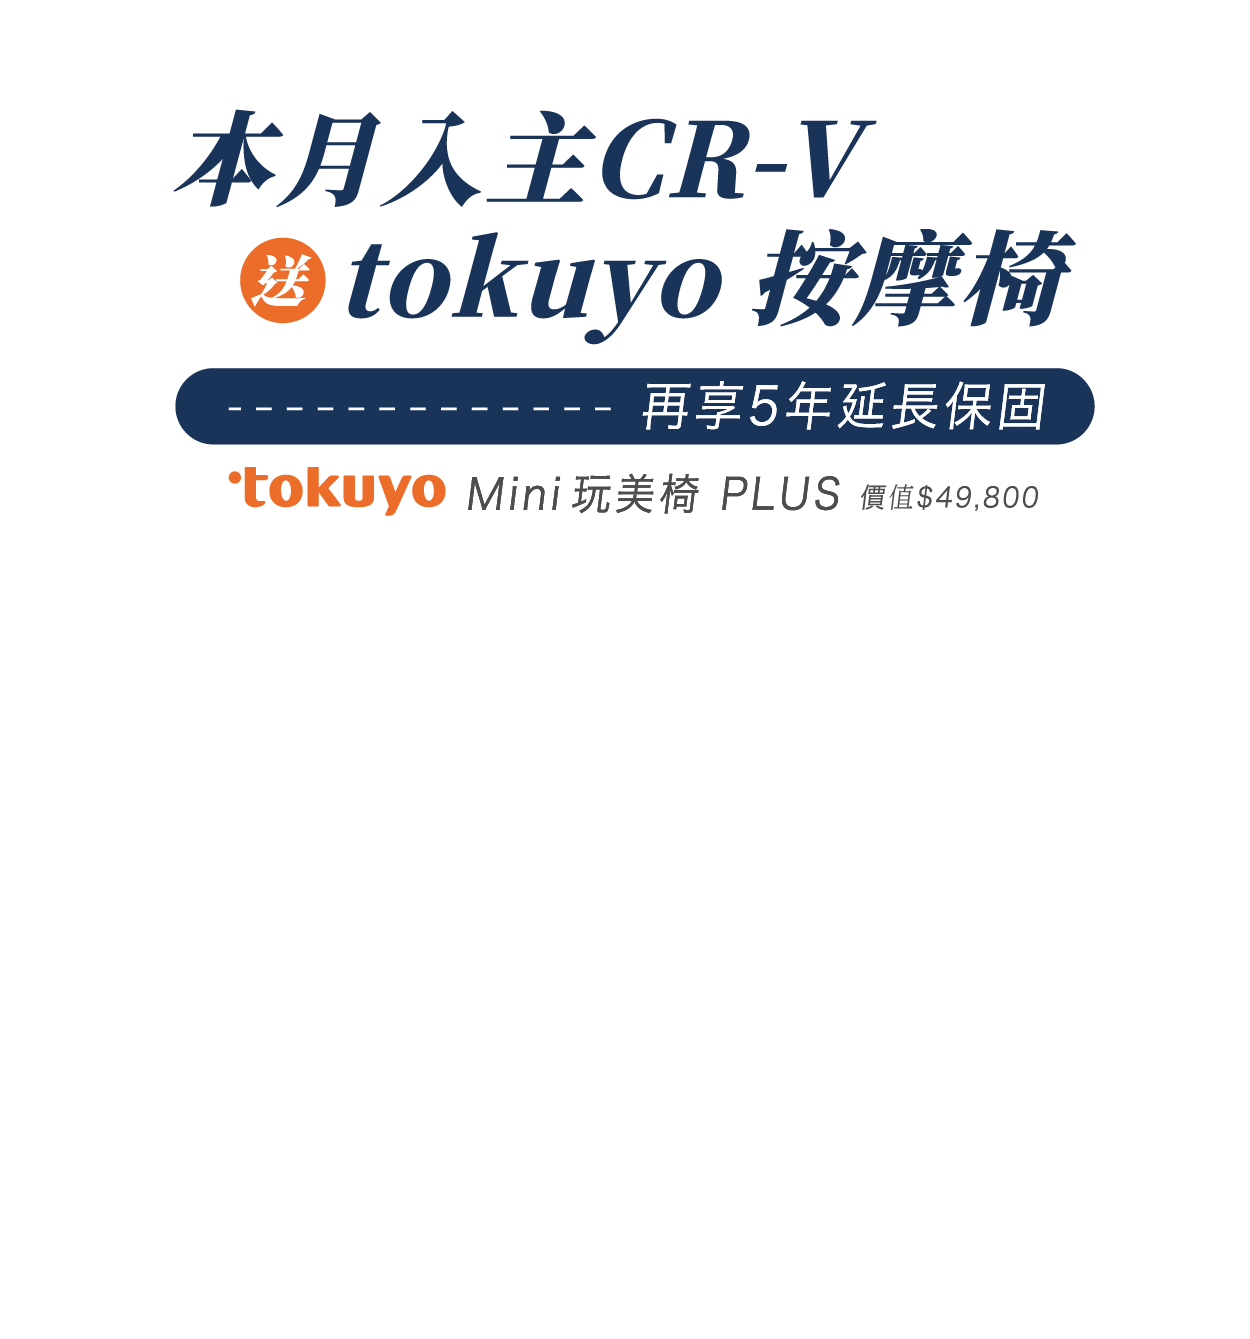 本月入主 CR-V，送tokuyo按摩椅，再享5年延長保固。